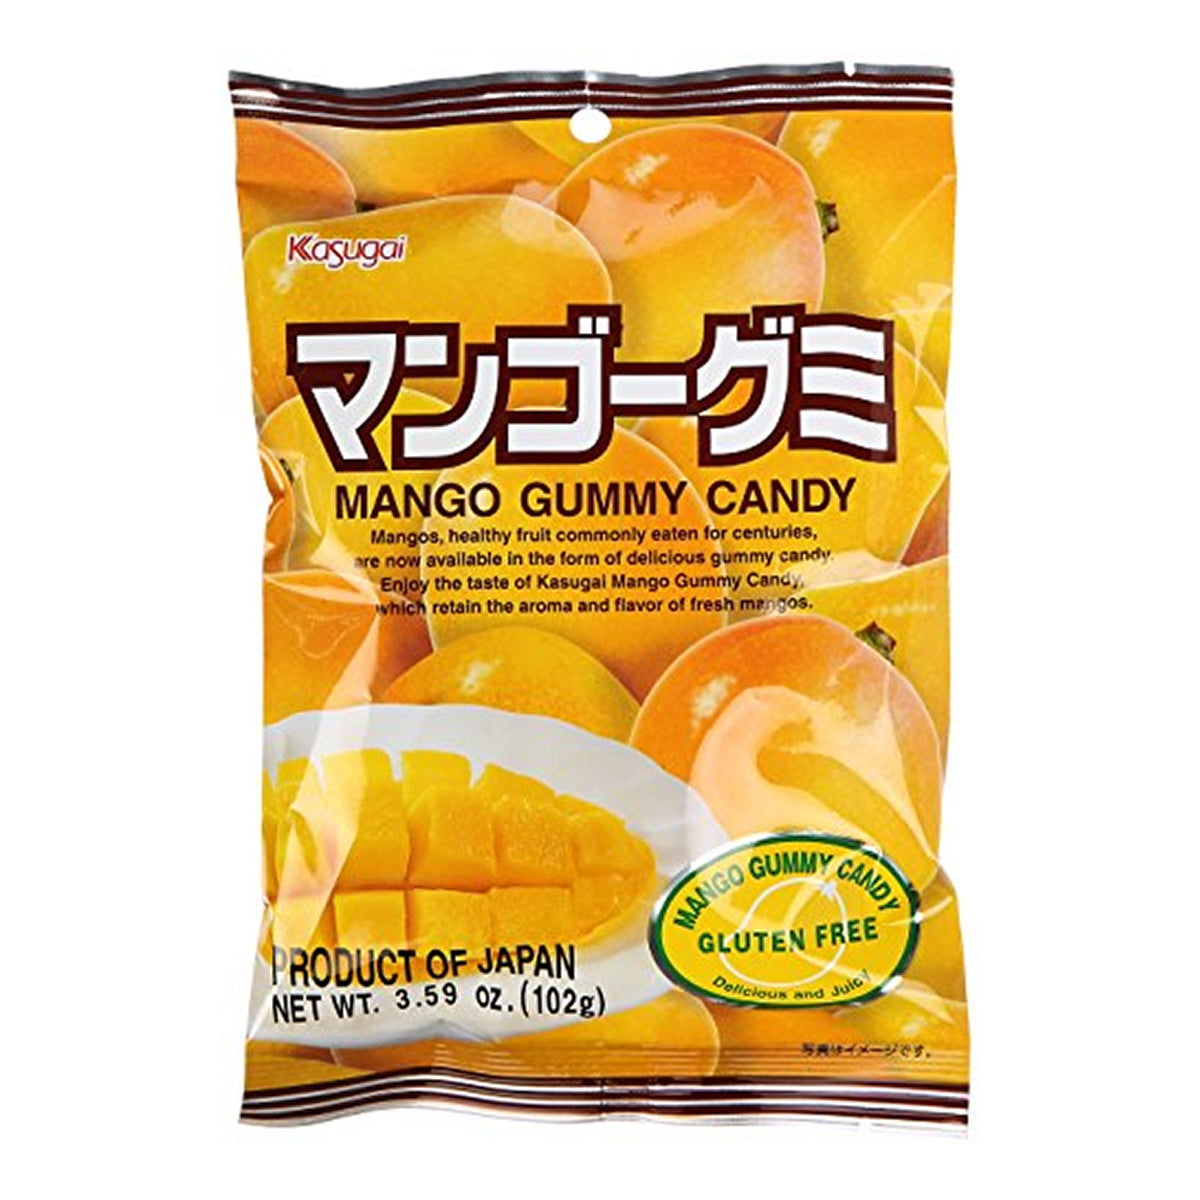 kasugai mango gummy candy - 107g